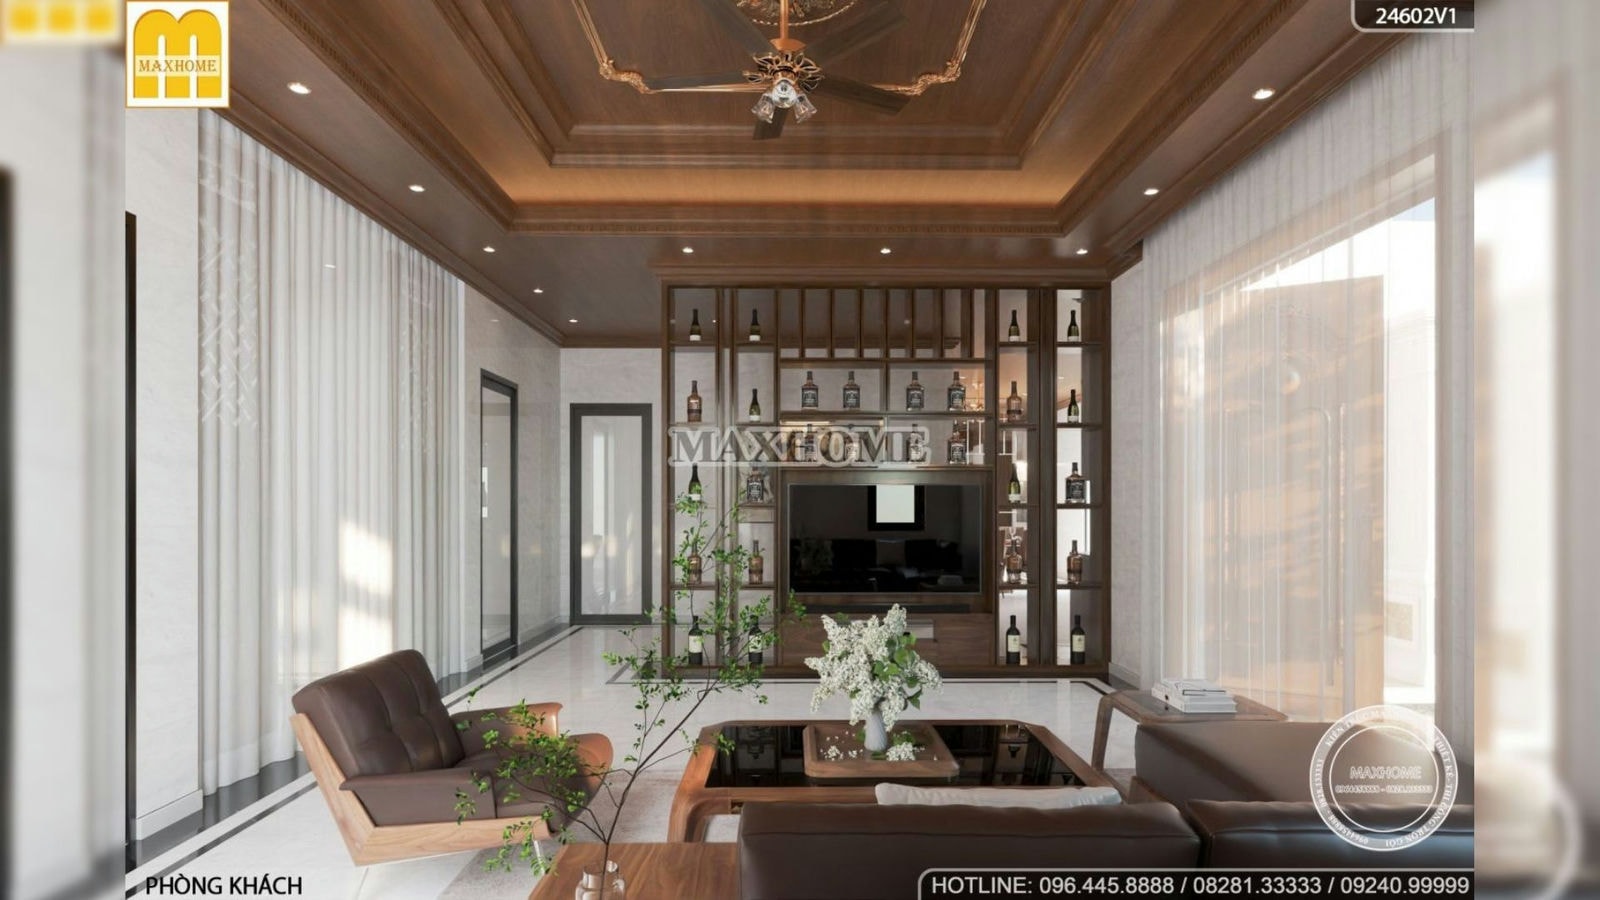 Bộ nội thất nhẹ nhàng và tinh tế từ gỗ có giá từ 290 triệu